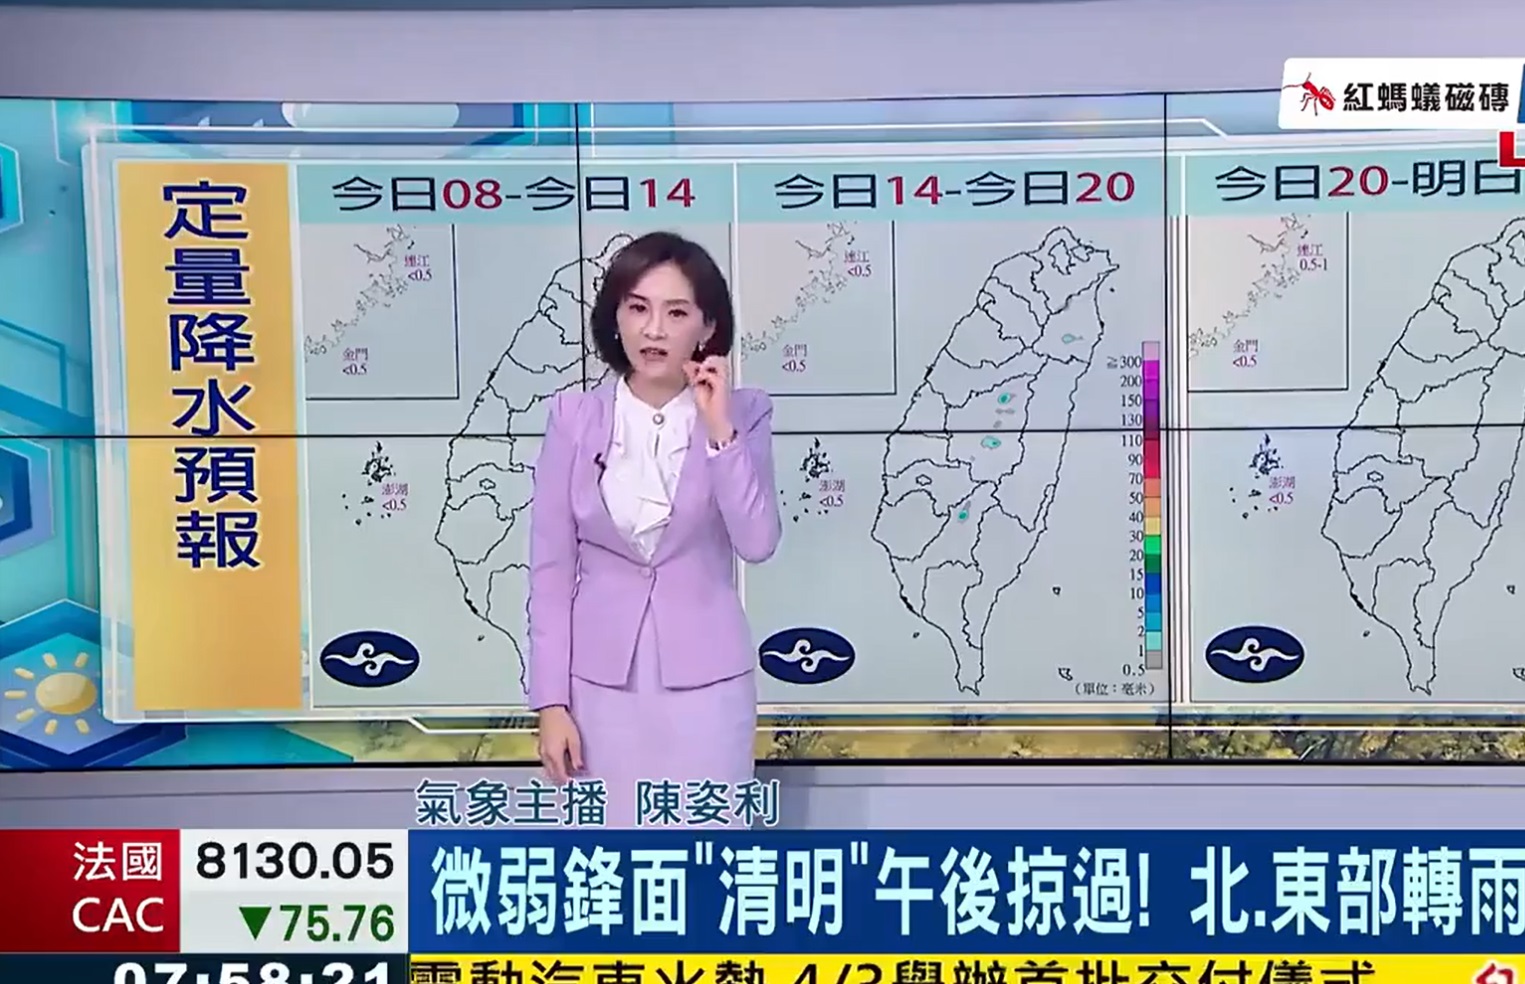 مذيعة تايوانية تبث خبر الإنذار المبكر للزلزال فيحدث مباشرة